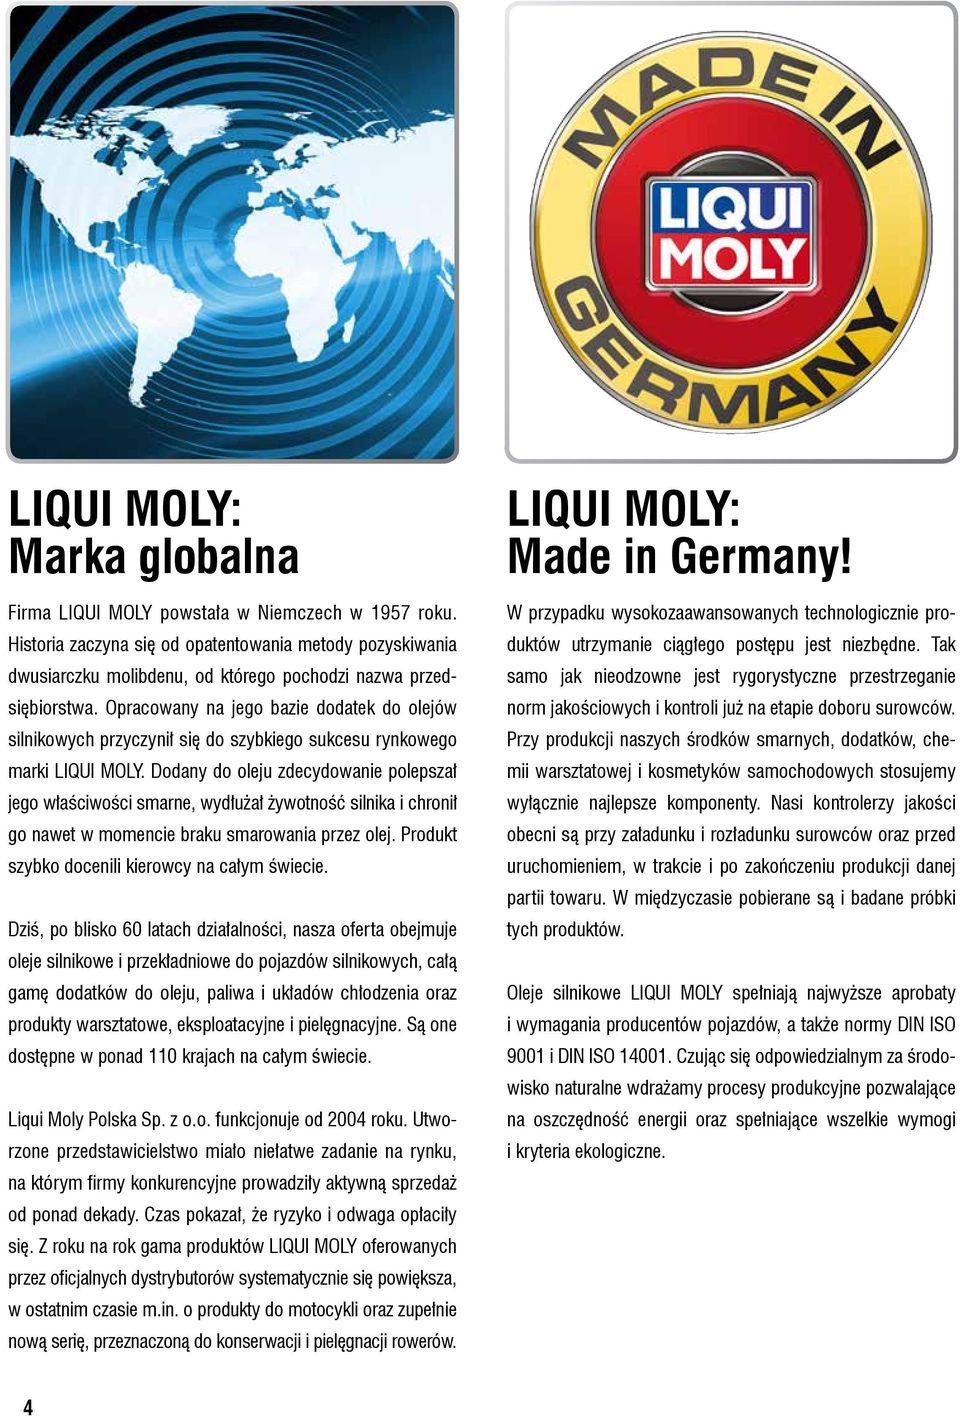 Opracowany na jego bazie dodatek do olejów silnikowych przyczynił się do szybkiego sukcesu rynkowego marki LIQUI MOLY.